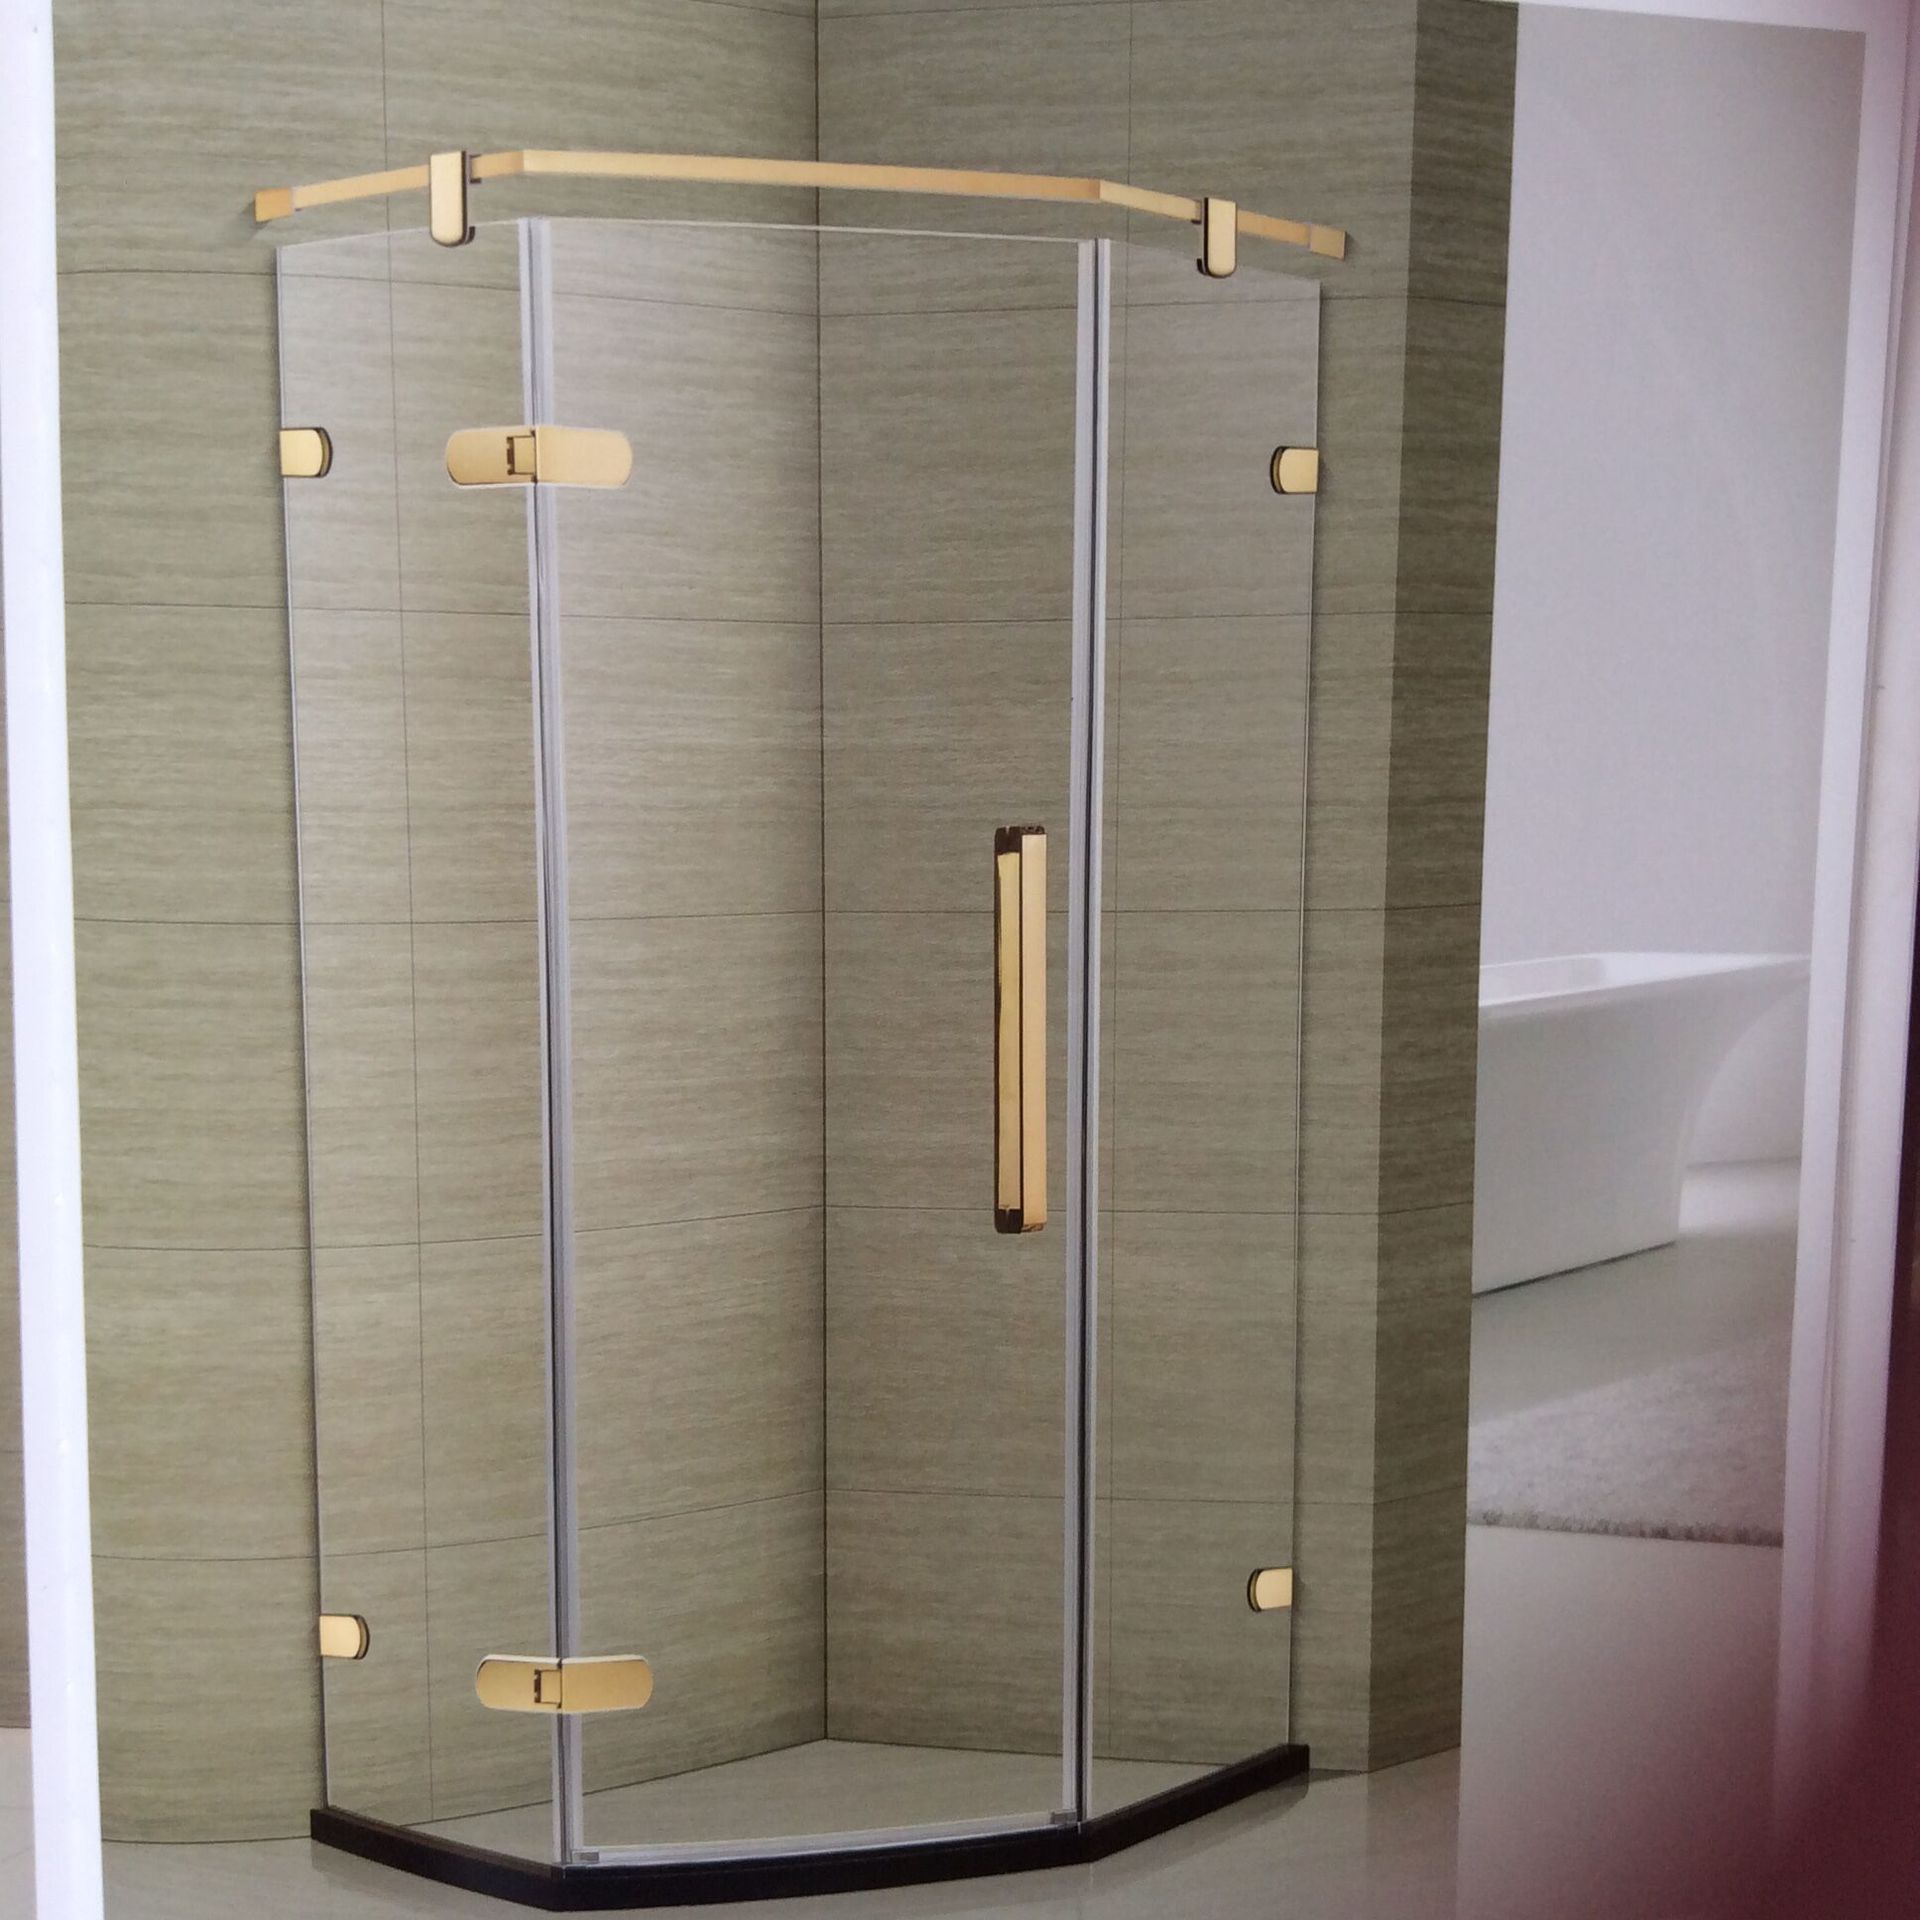 新款简易整体浴室淋浴房 酒店 公寓 楼盘 工程不锈钢隔断淋浴房